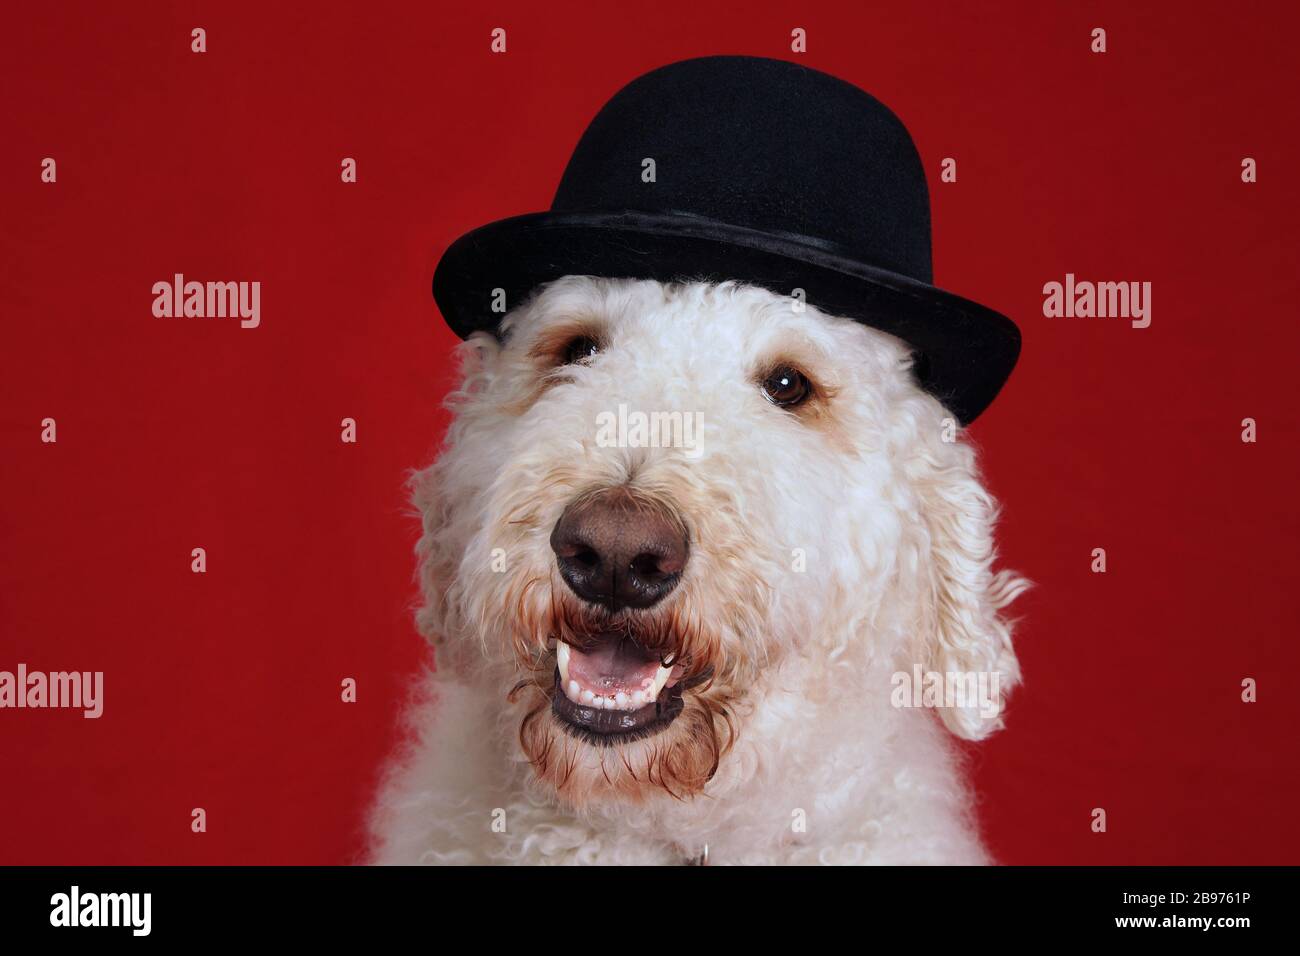 Cute goldendoodle chien avec chapeau melon portrait sur rouge Banque D'Images